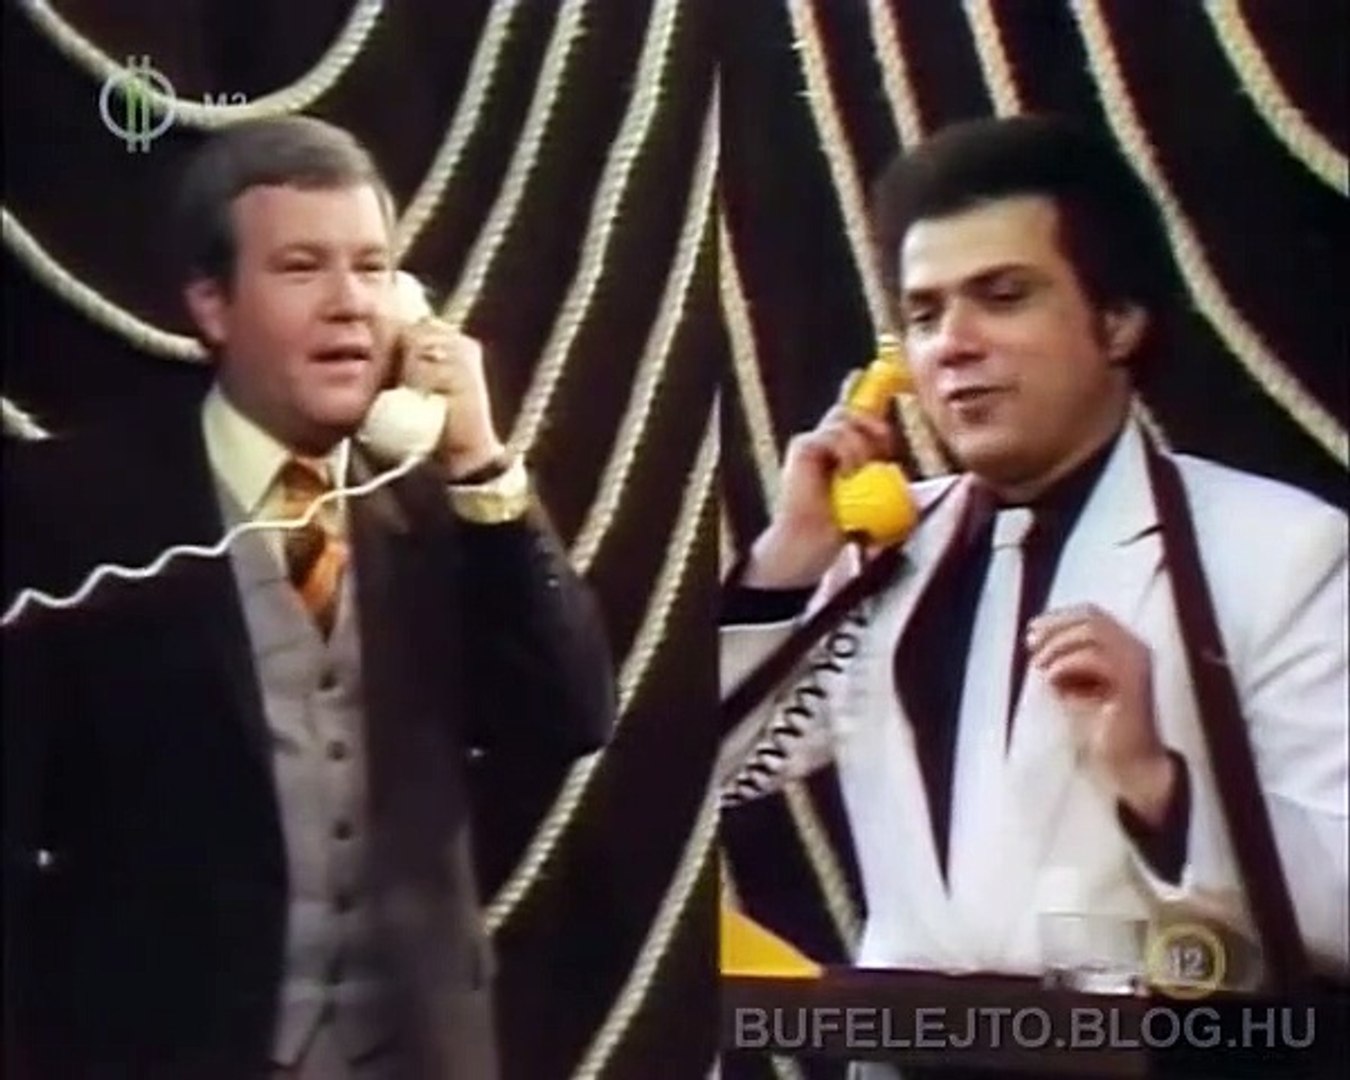 Gálvölgyi János & Rózsa György: Kapcsoltam (1981) - video Dailymotion